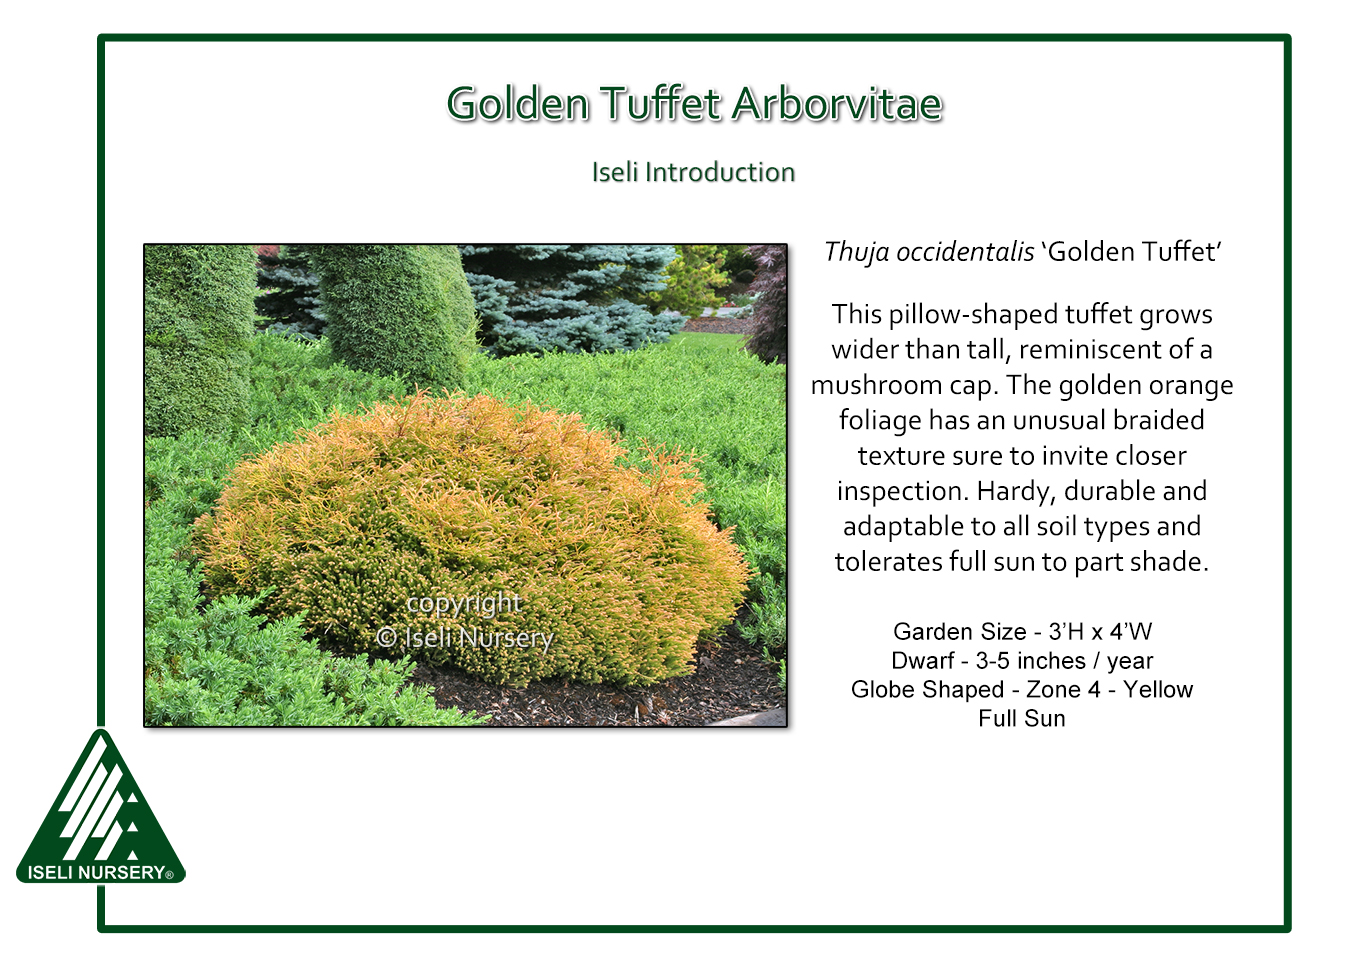 Thuja occidentalis Golden Tuffet - Iseli Nursery